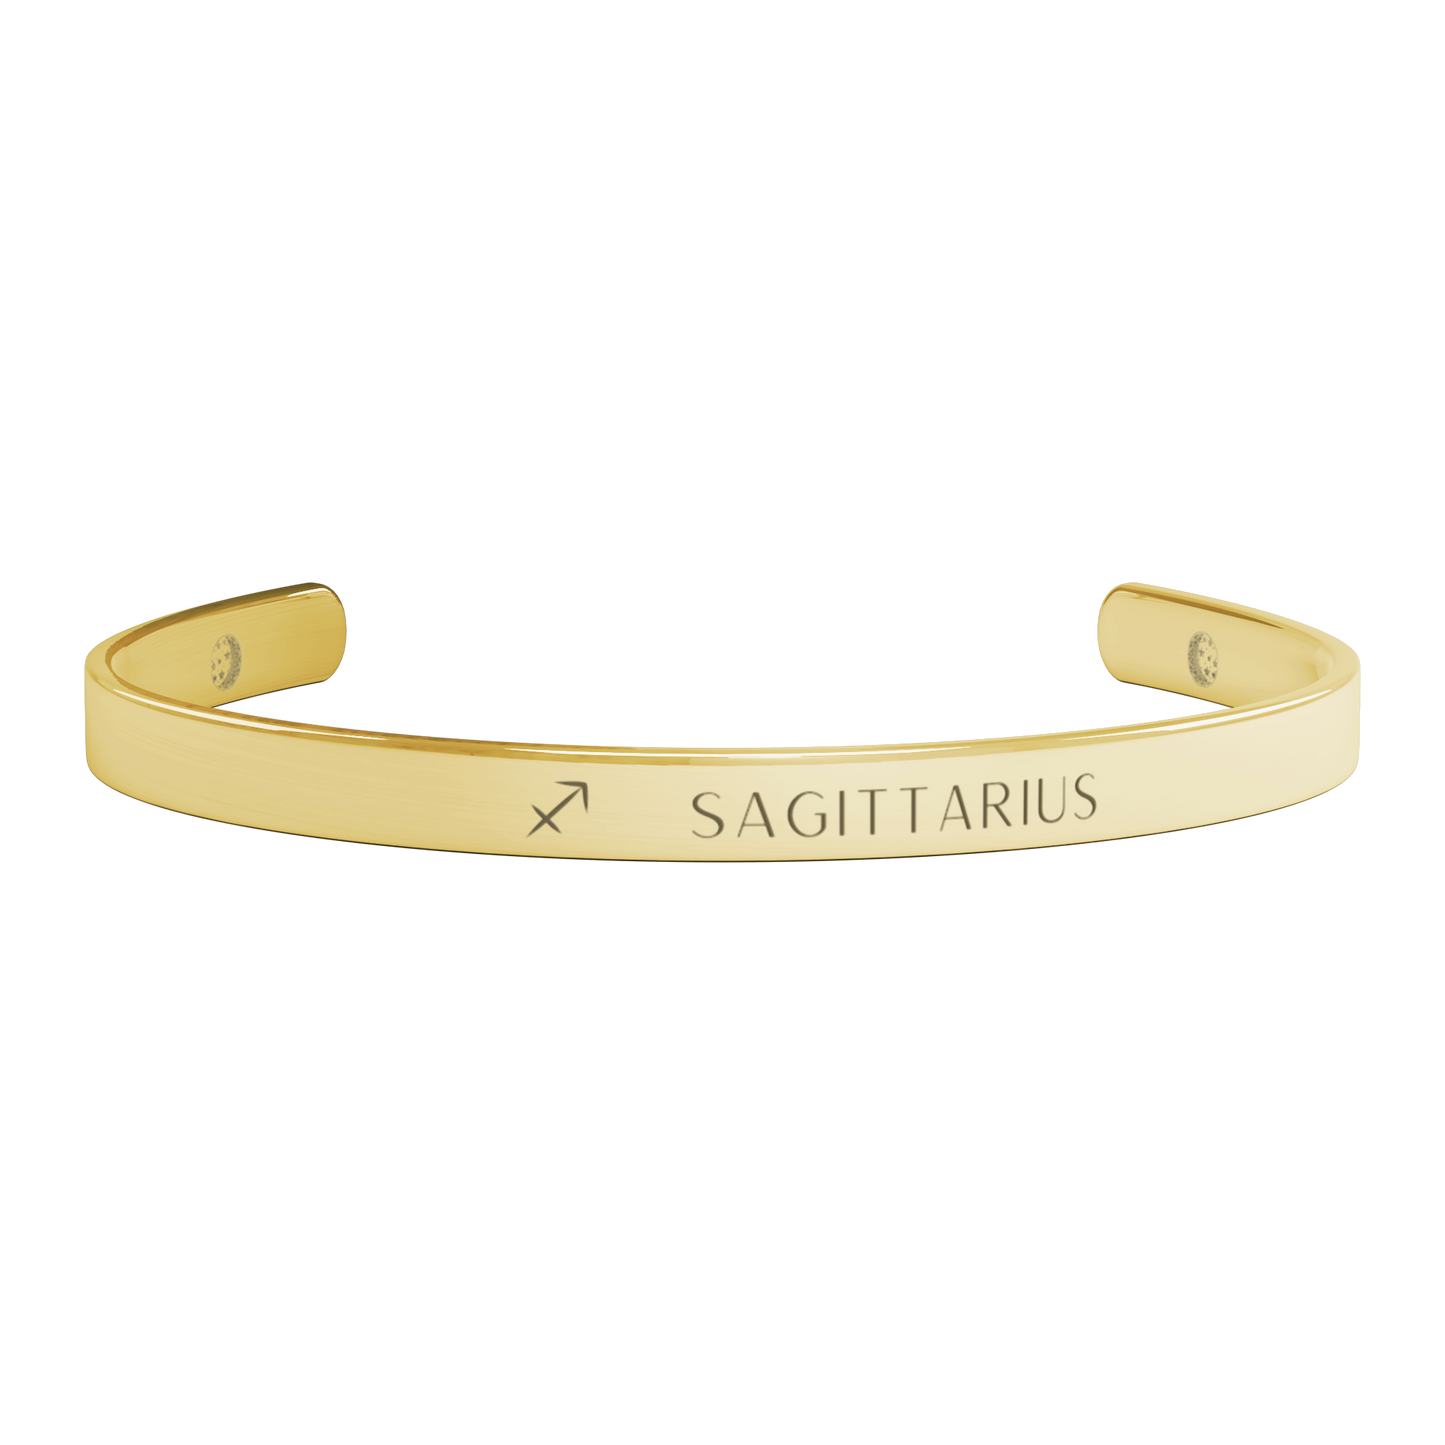 Sagittarius Cuff Bracelet